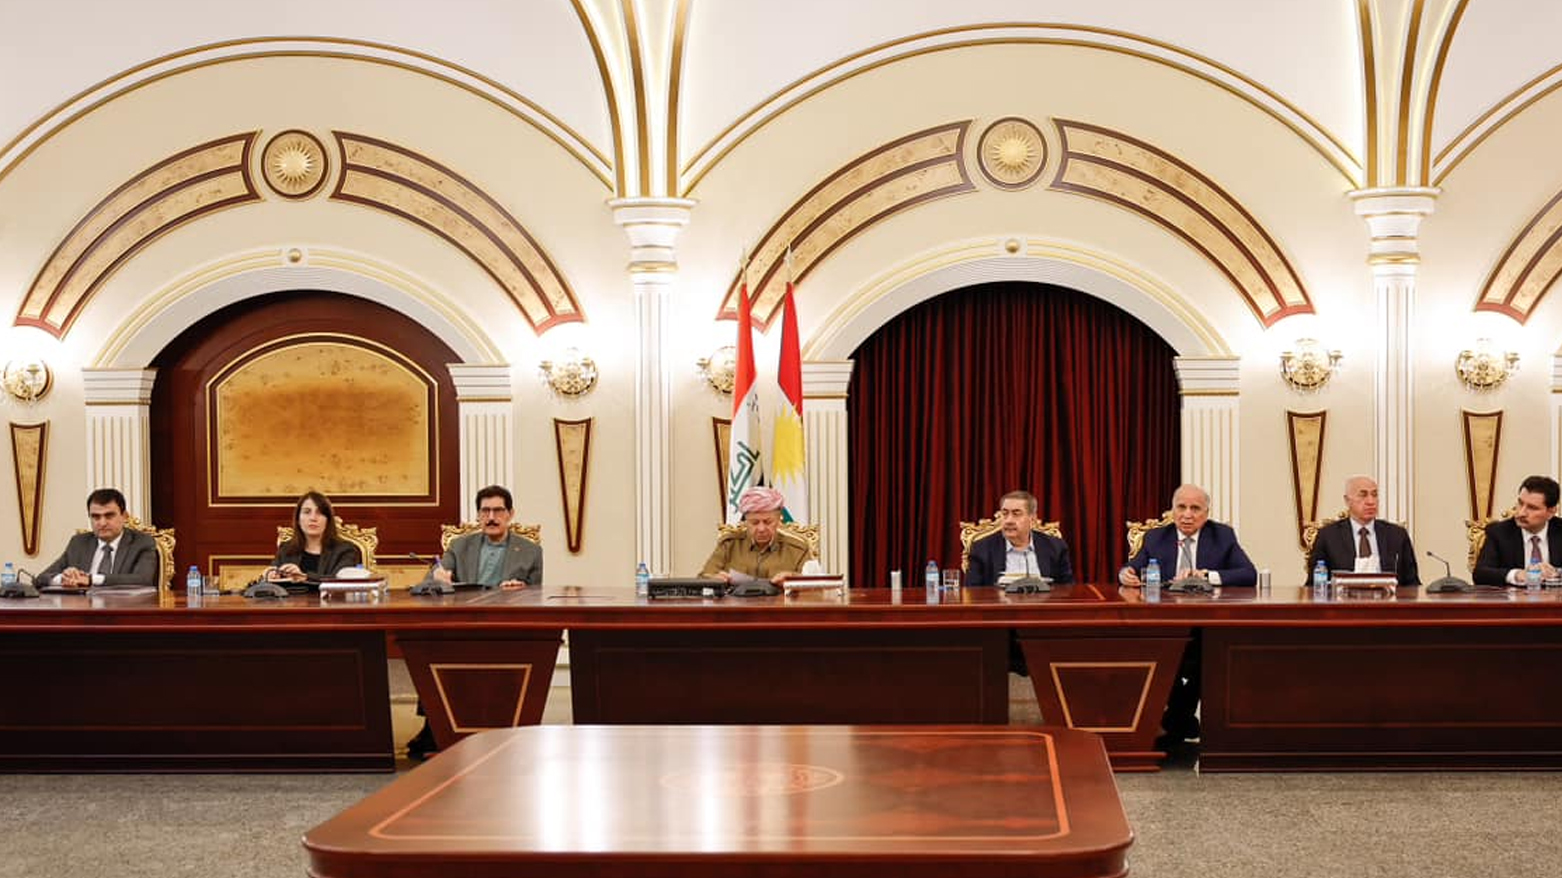 الرئيس بارزاني يجتمع بوزيري وكتلة الحزب الديمقراطي الكوردستاني في مجلس النواب العراقي